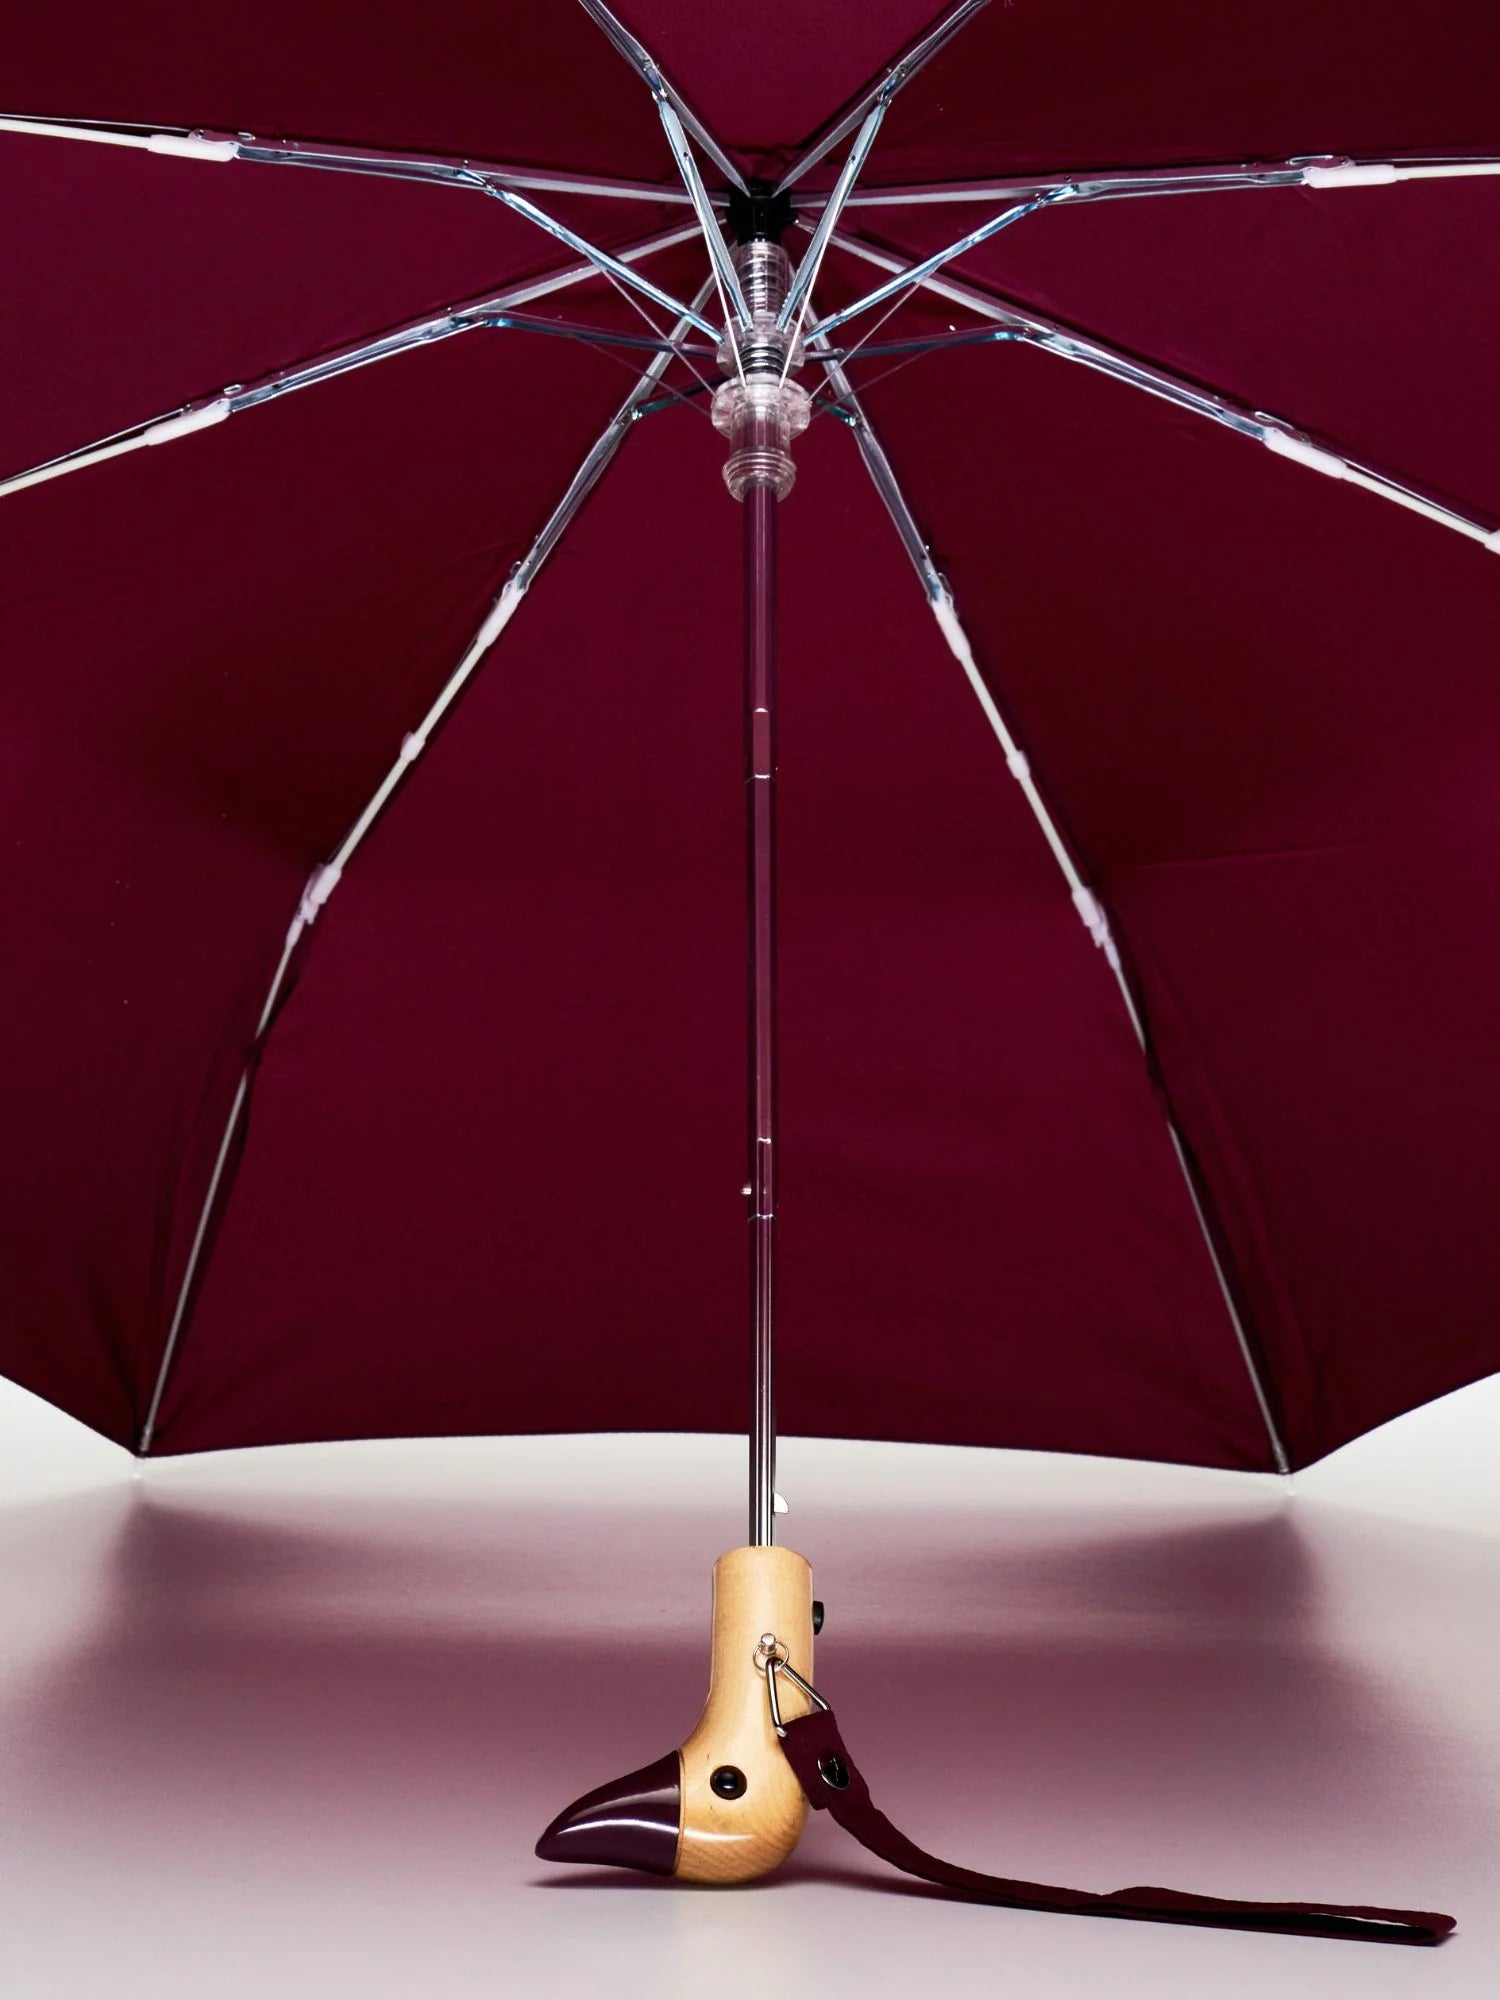 Duckhead Umbrella